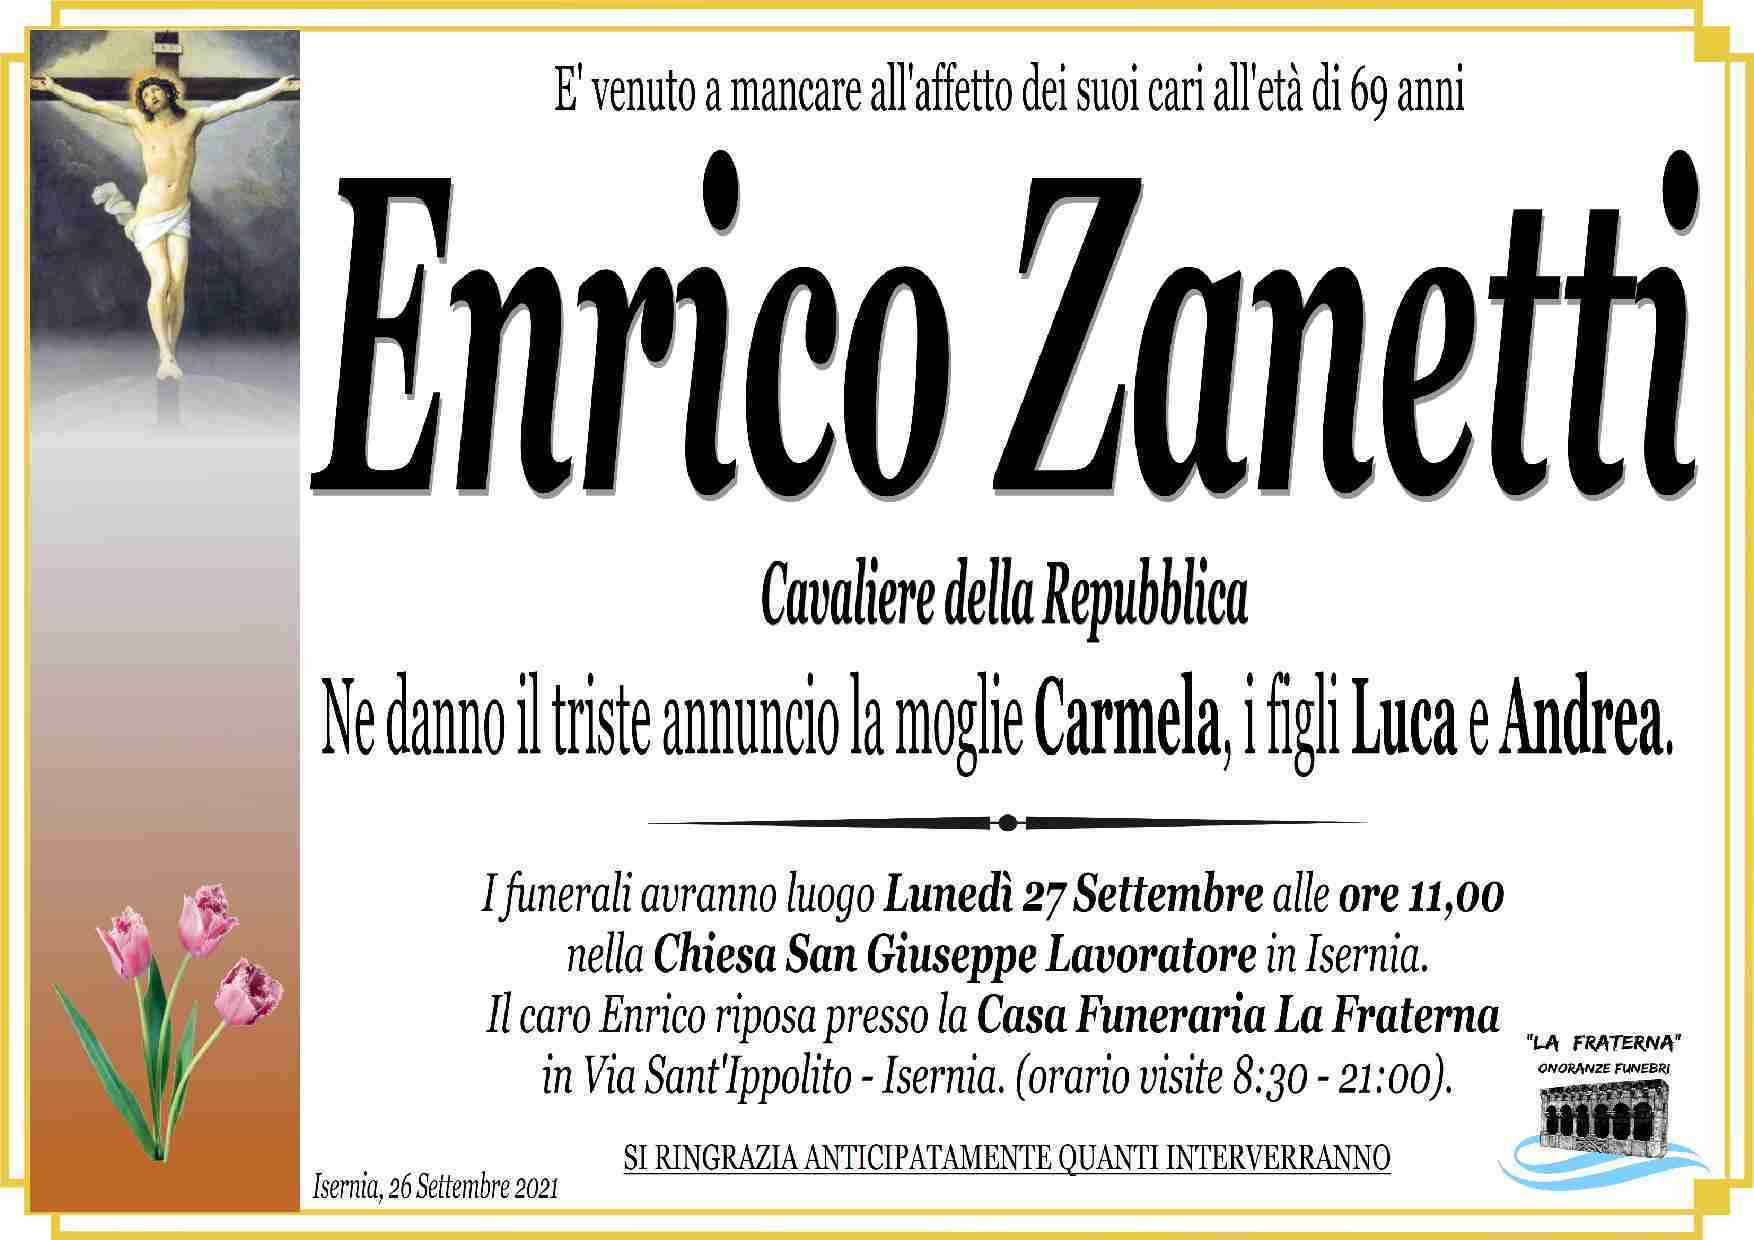 Enrico Zanetti